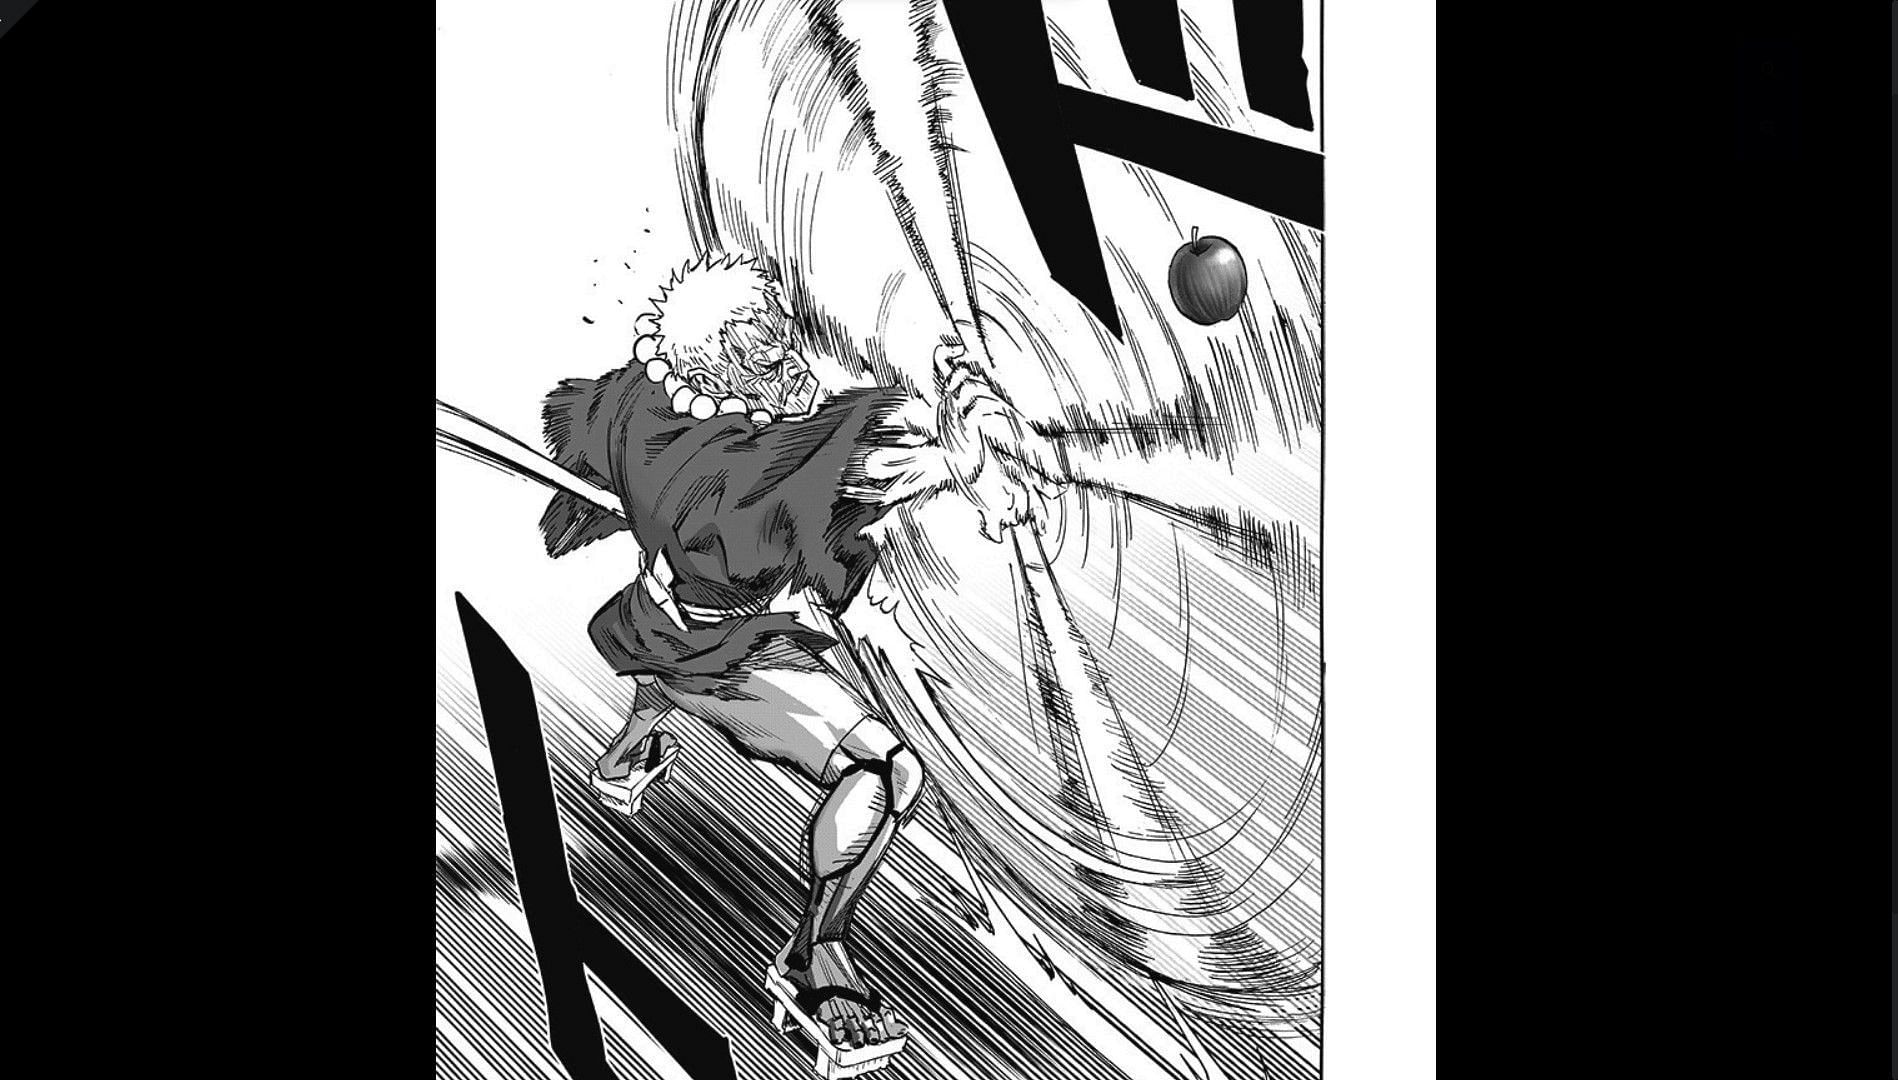 Nichirin in One Punch Man manga chapter 188 (Image via Shueisha/Yusuke Murata)